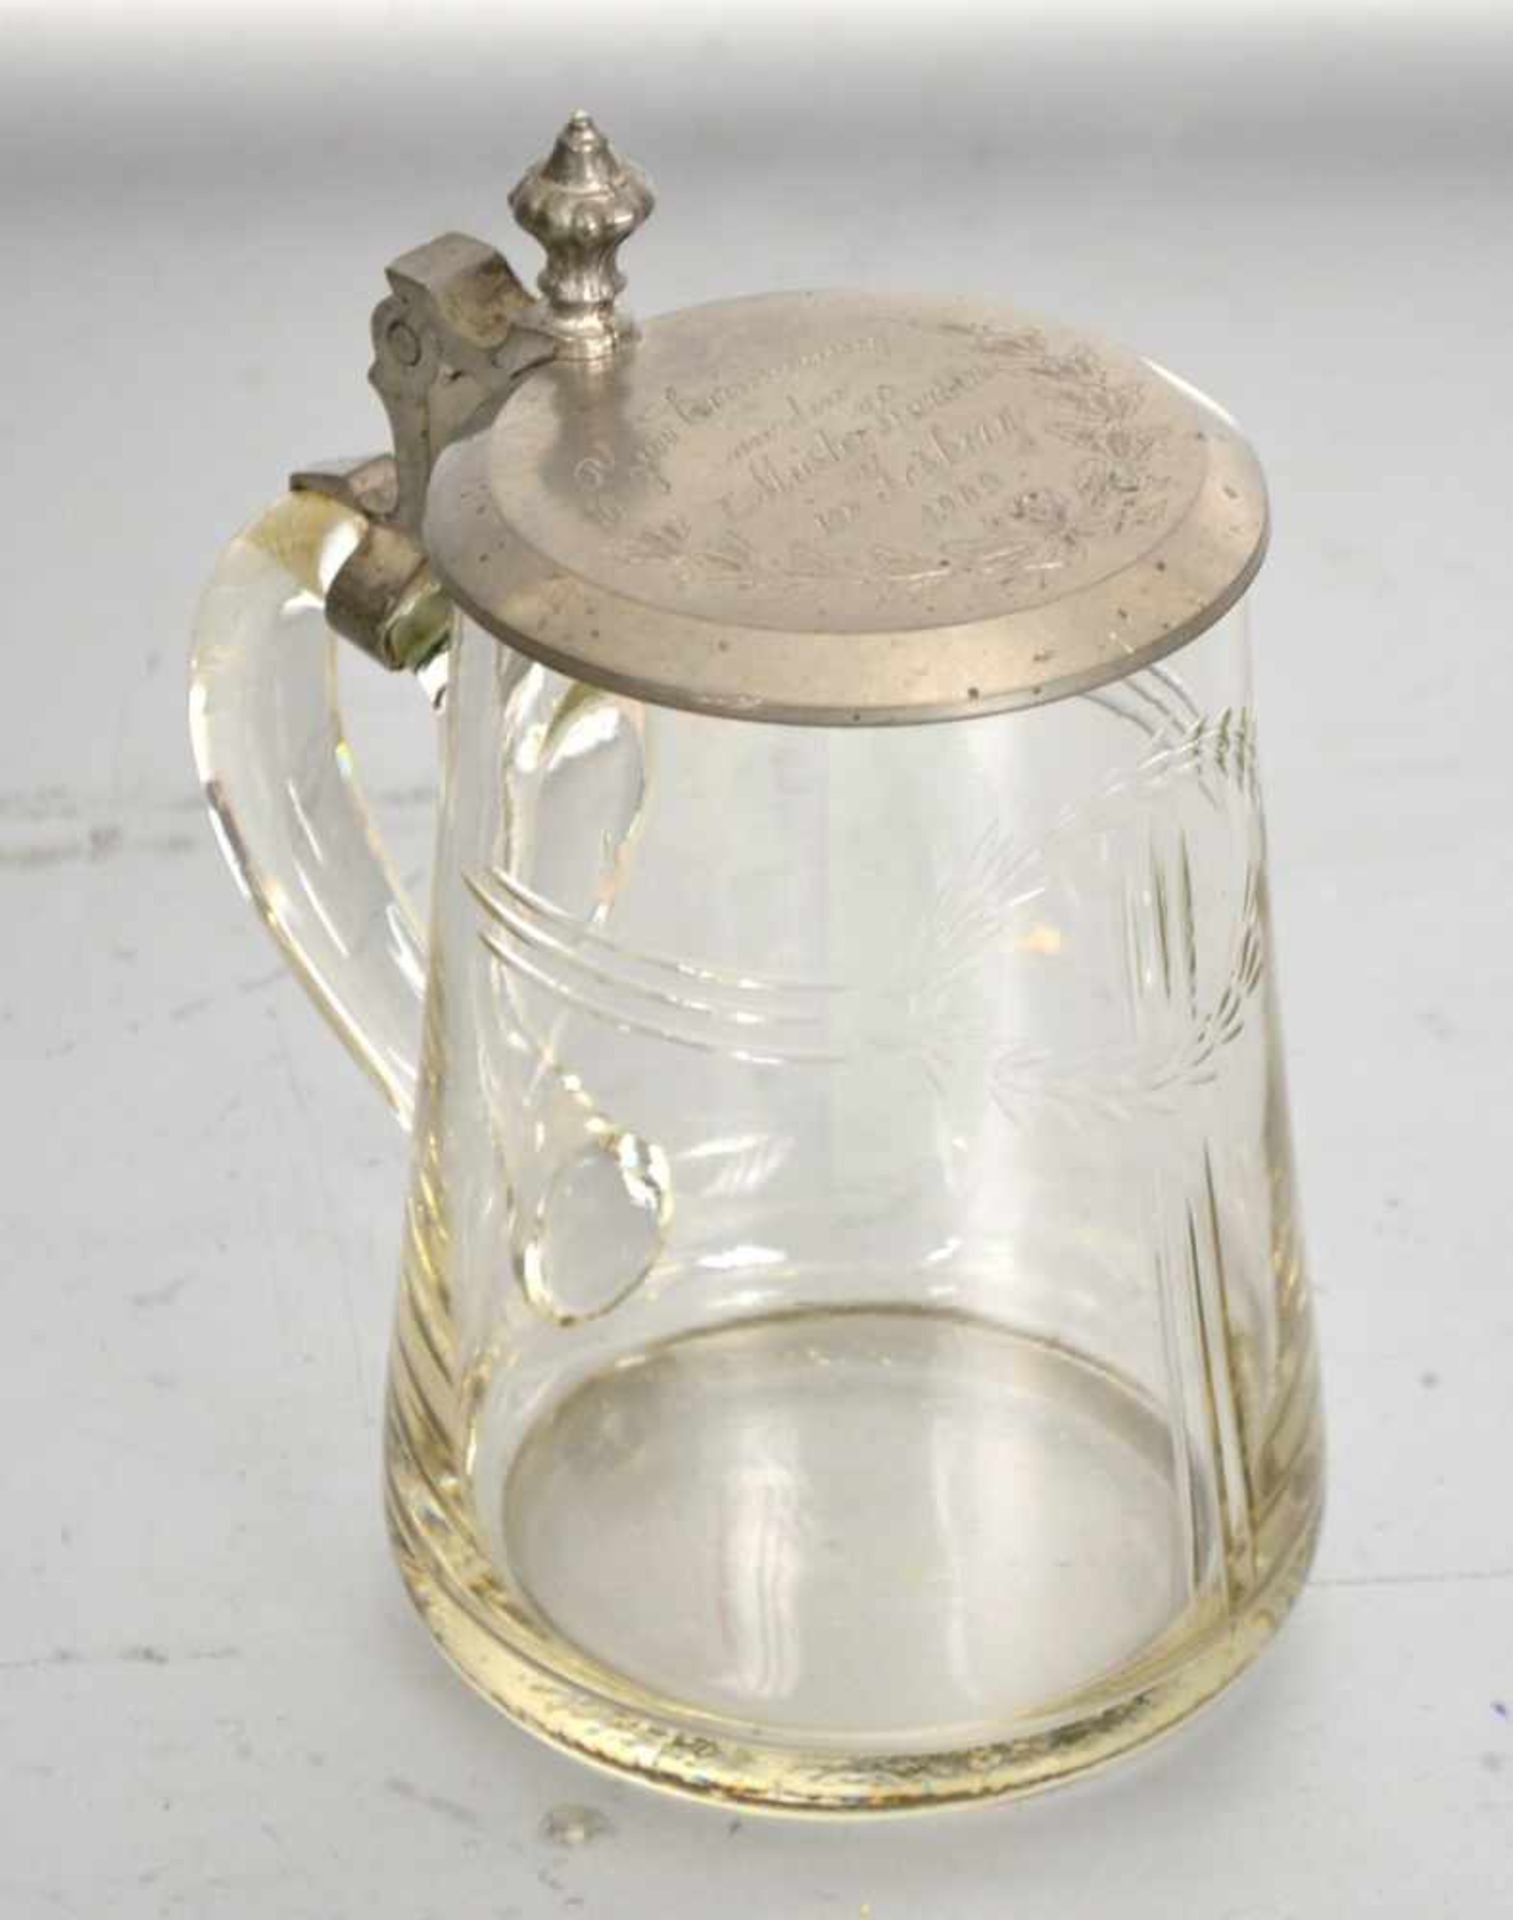 Bierkrugfarbl. Glas, geschliffen verziert, mit Zinndeckel, dat. 1909, H 15 cm